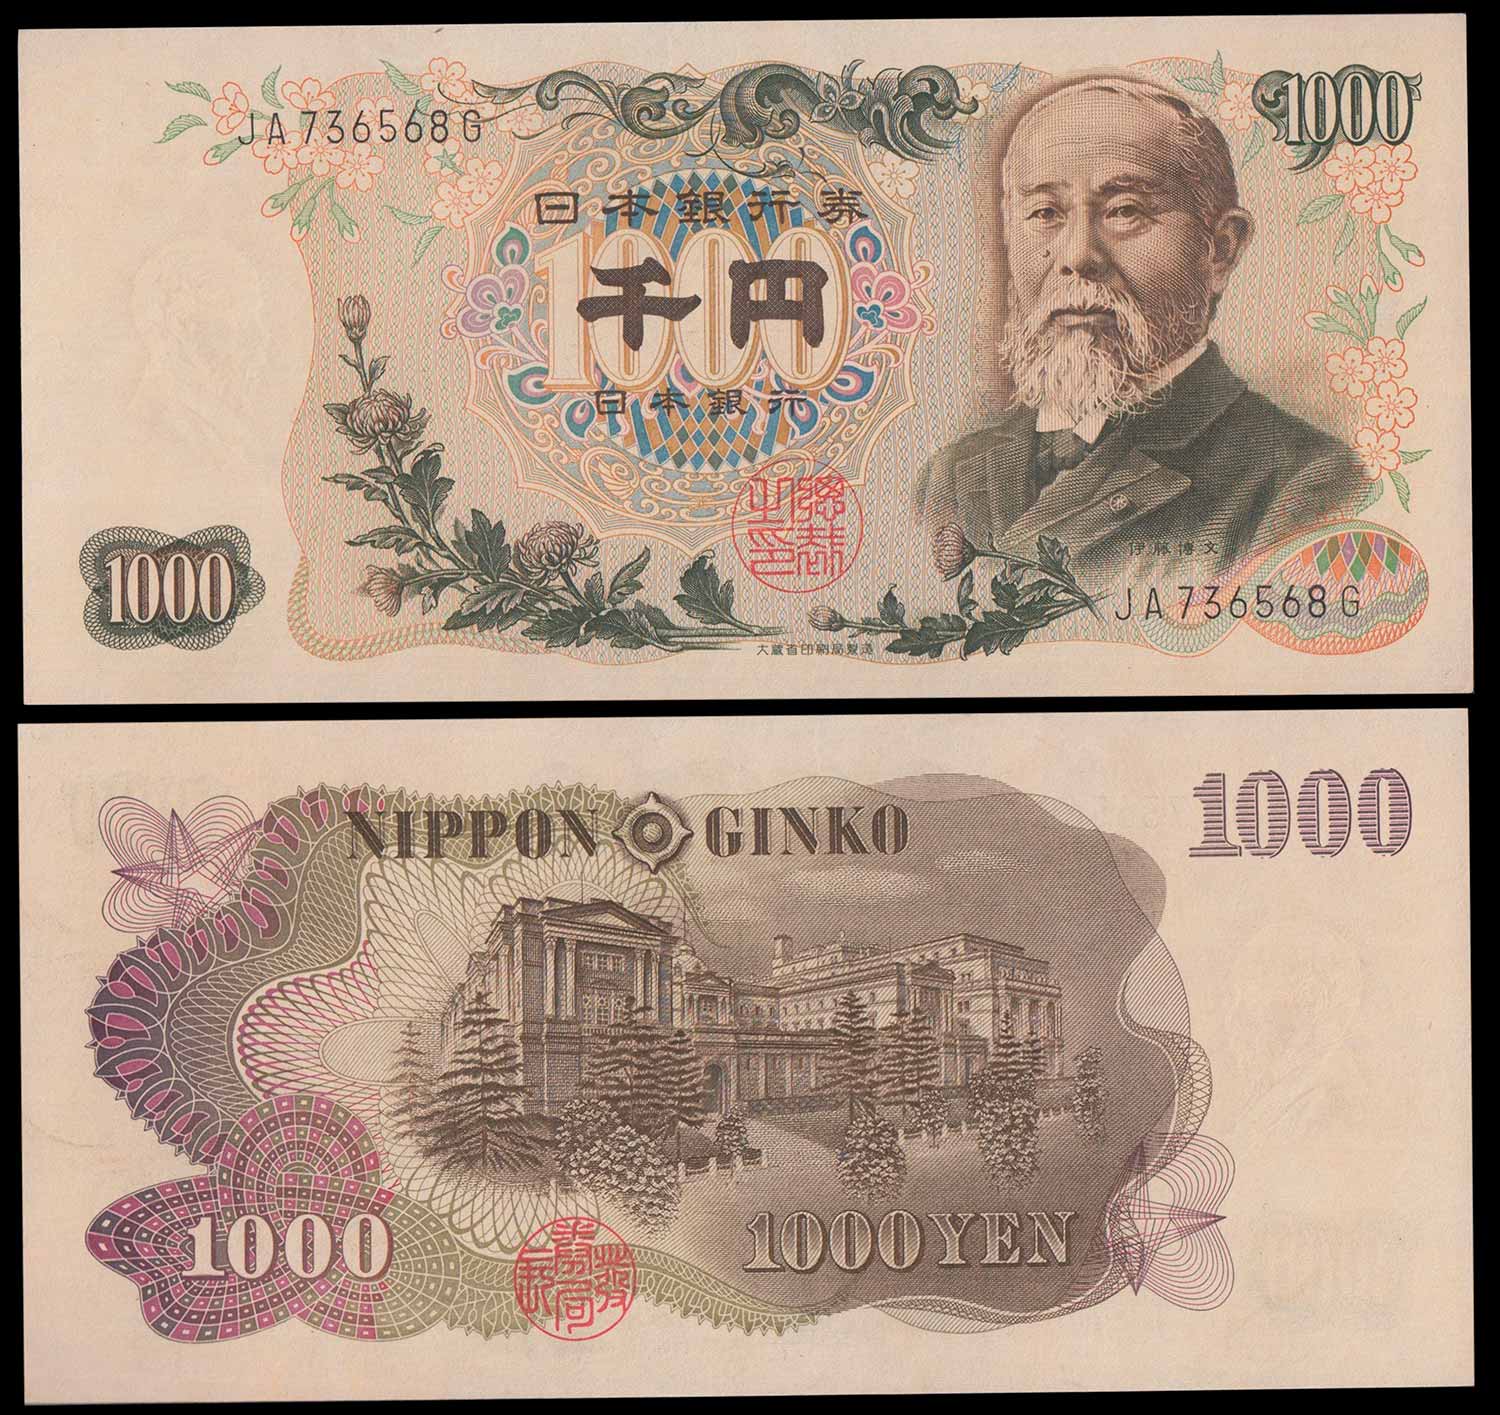 GIAPPONE 1000 Yen 1963 1000 Yen "Ito Hirobumi" Q/Fds